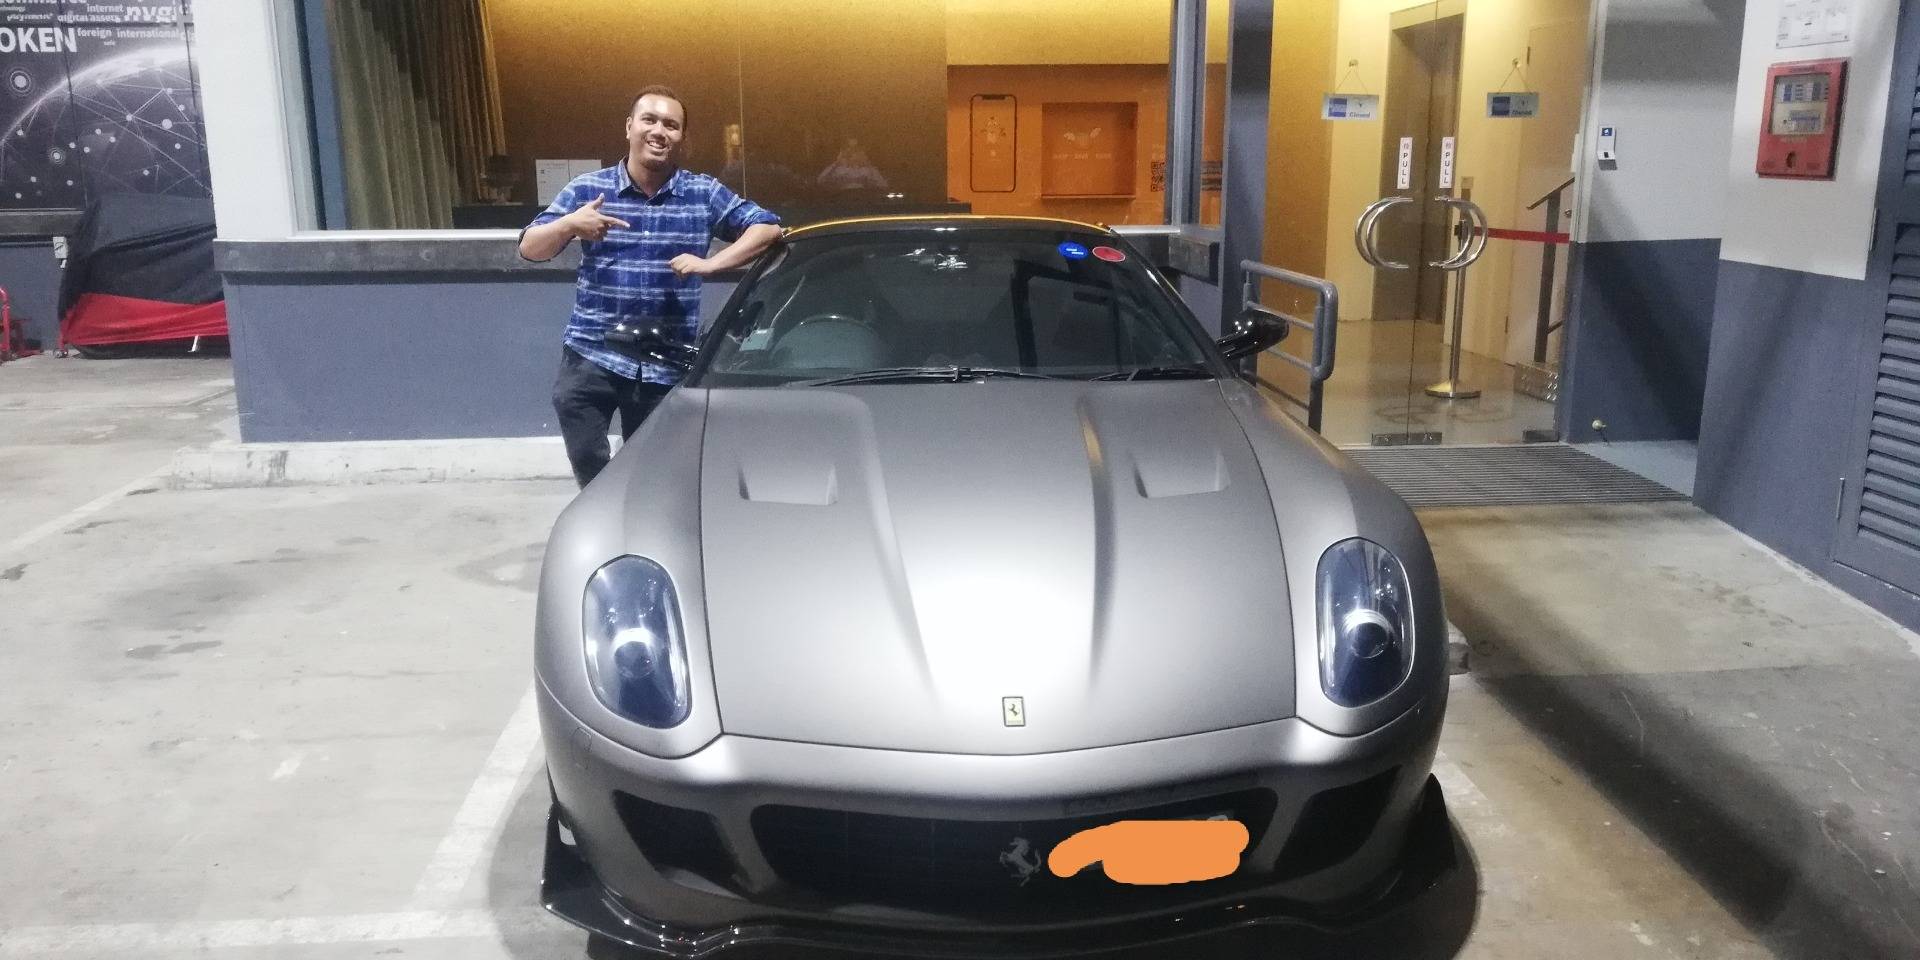 Wanna ride this silver Ferrari?